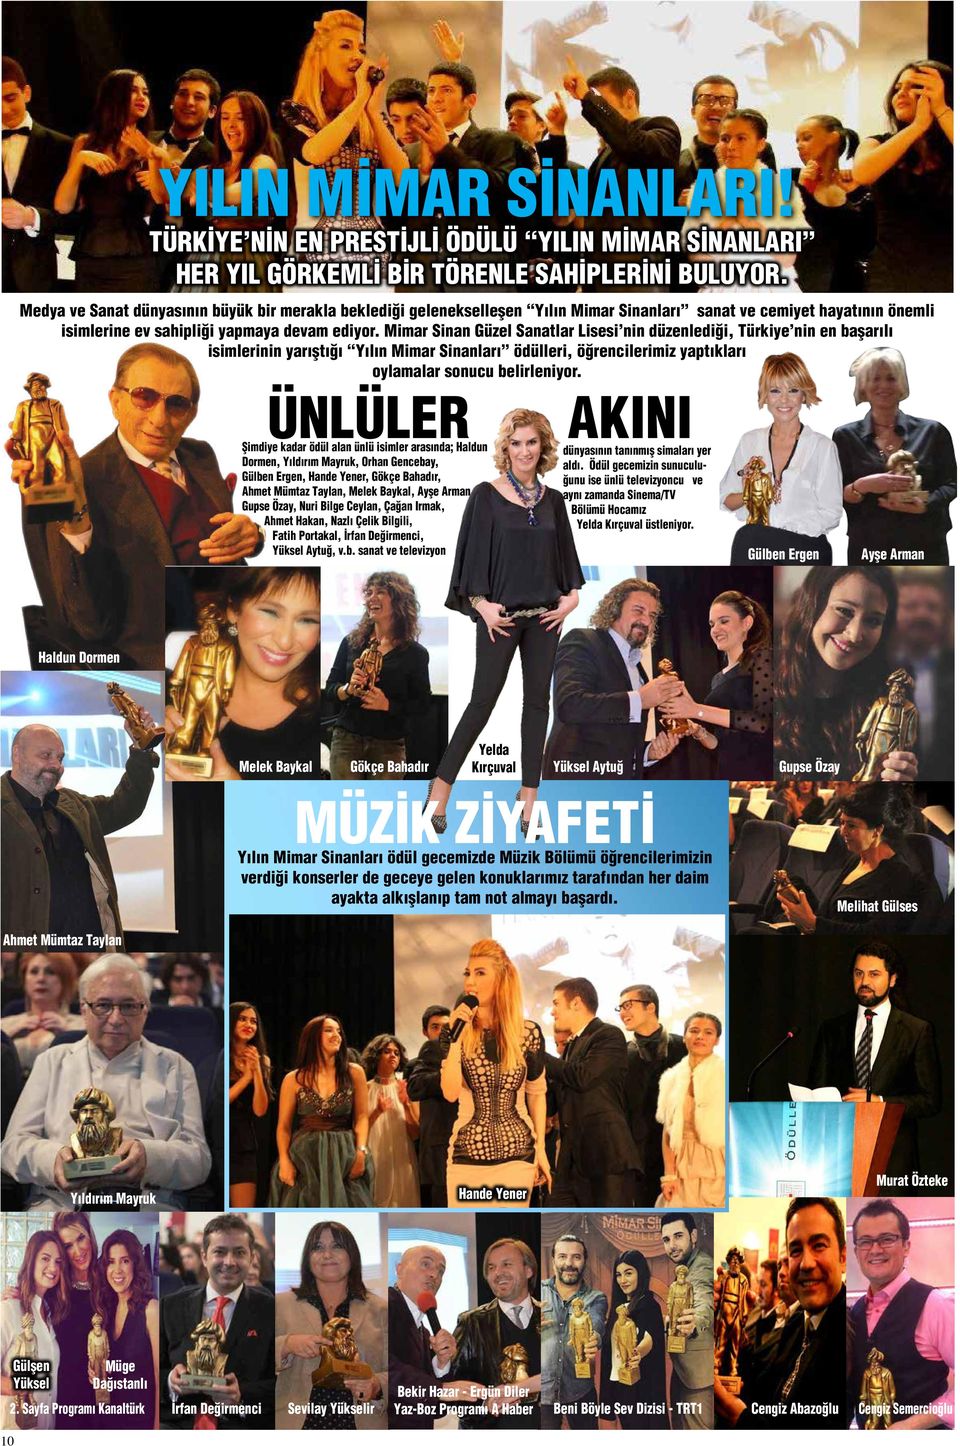 Mimar Sinan Güzel Sanatlar Lisesi nin düzenlediği, Türkiye nin en başarılı isimlerinin yarıştığı Yılın Mimar Sinanları ödülleri, öğrencilerimiz yaptıkları oylamalar sonucu belirleniyor.